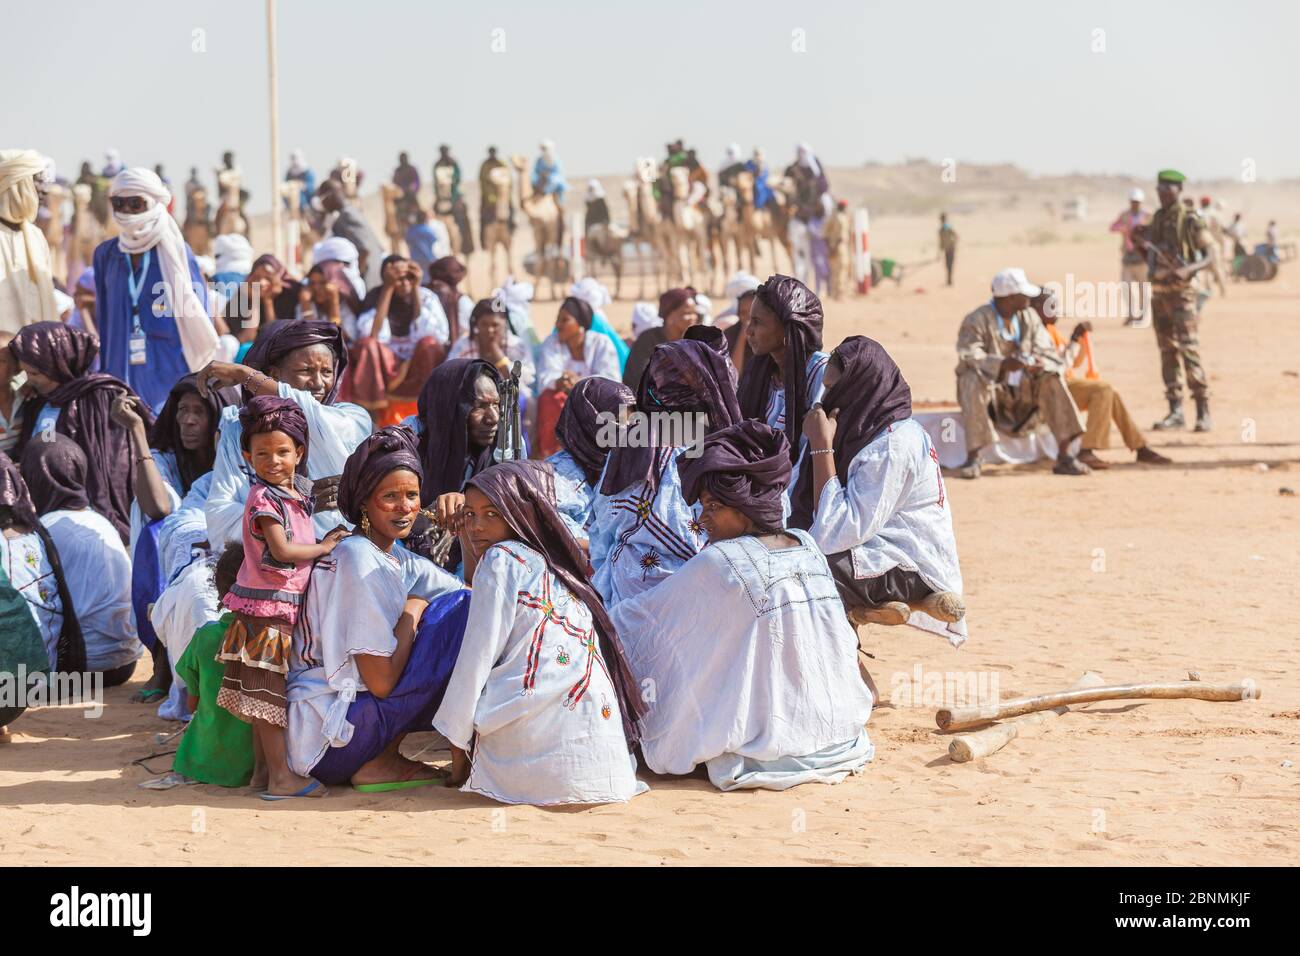 Tuareg women on nomad festival in Sahara desert Stock Photo